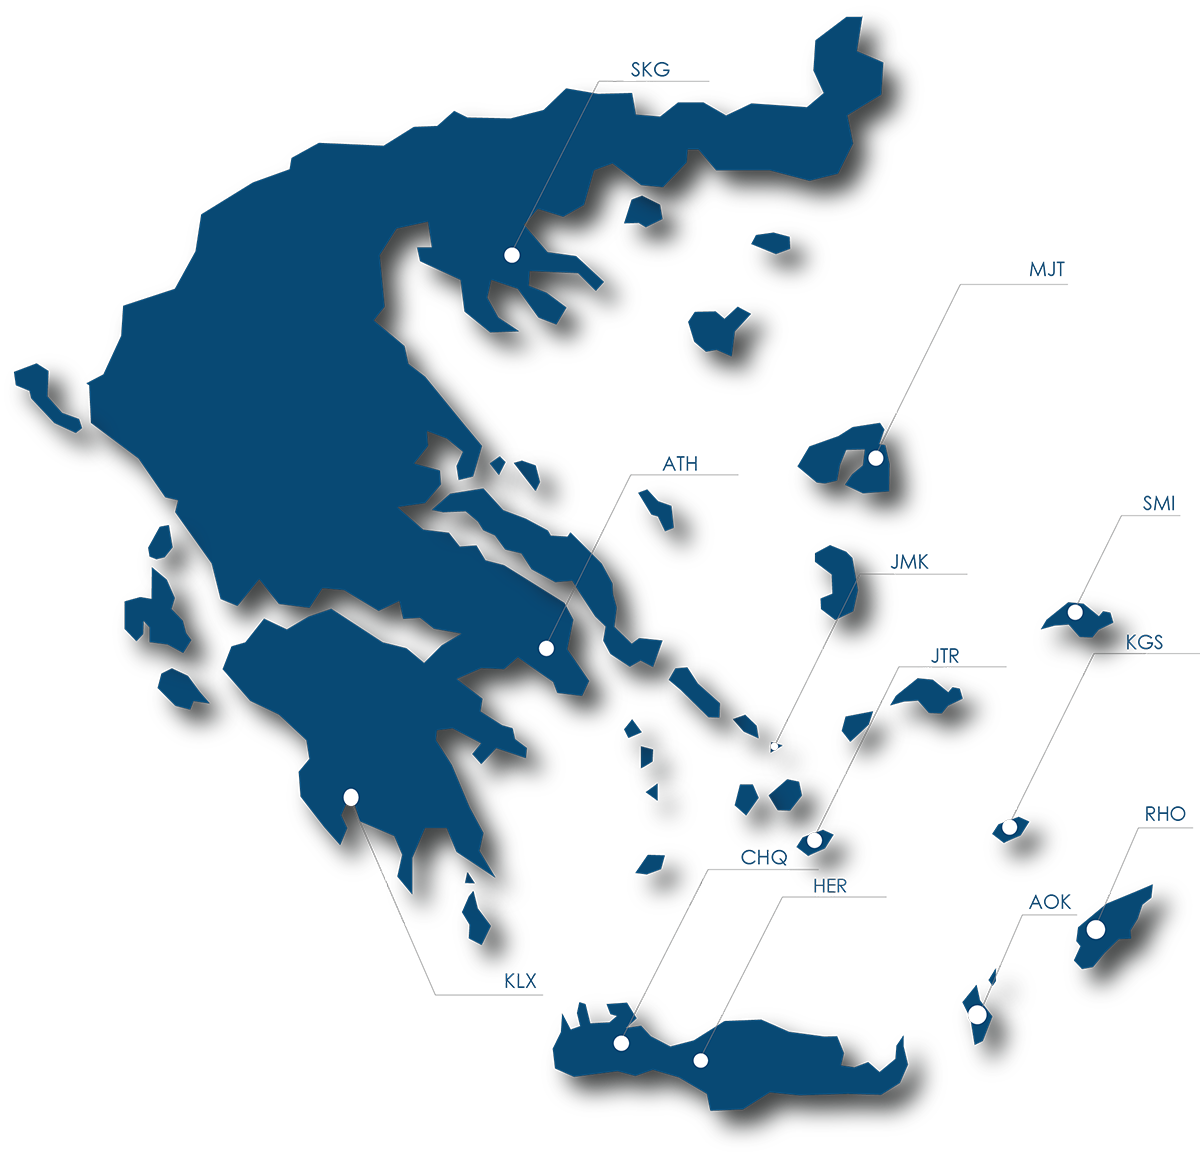 AIRCRAFT MAINTENANCE GREECE MAP